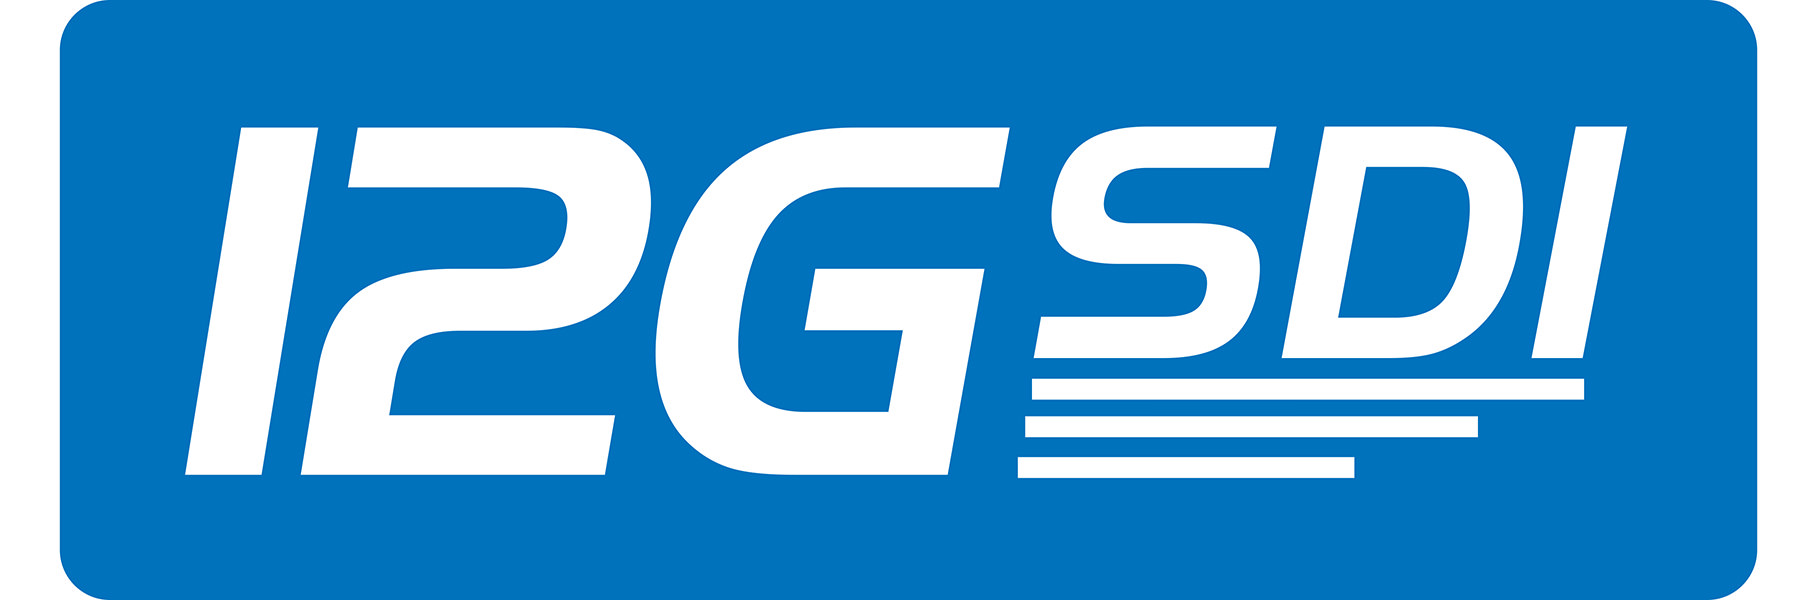 12G-SDI logo